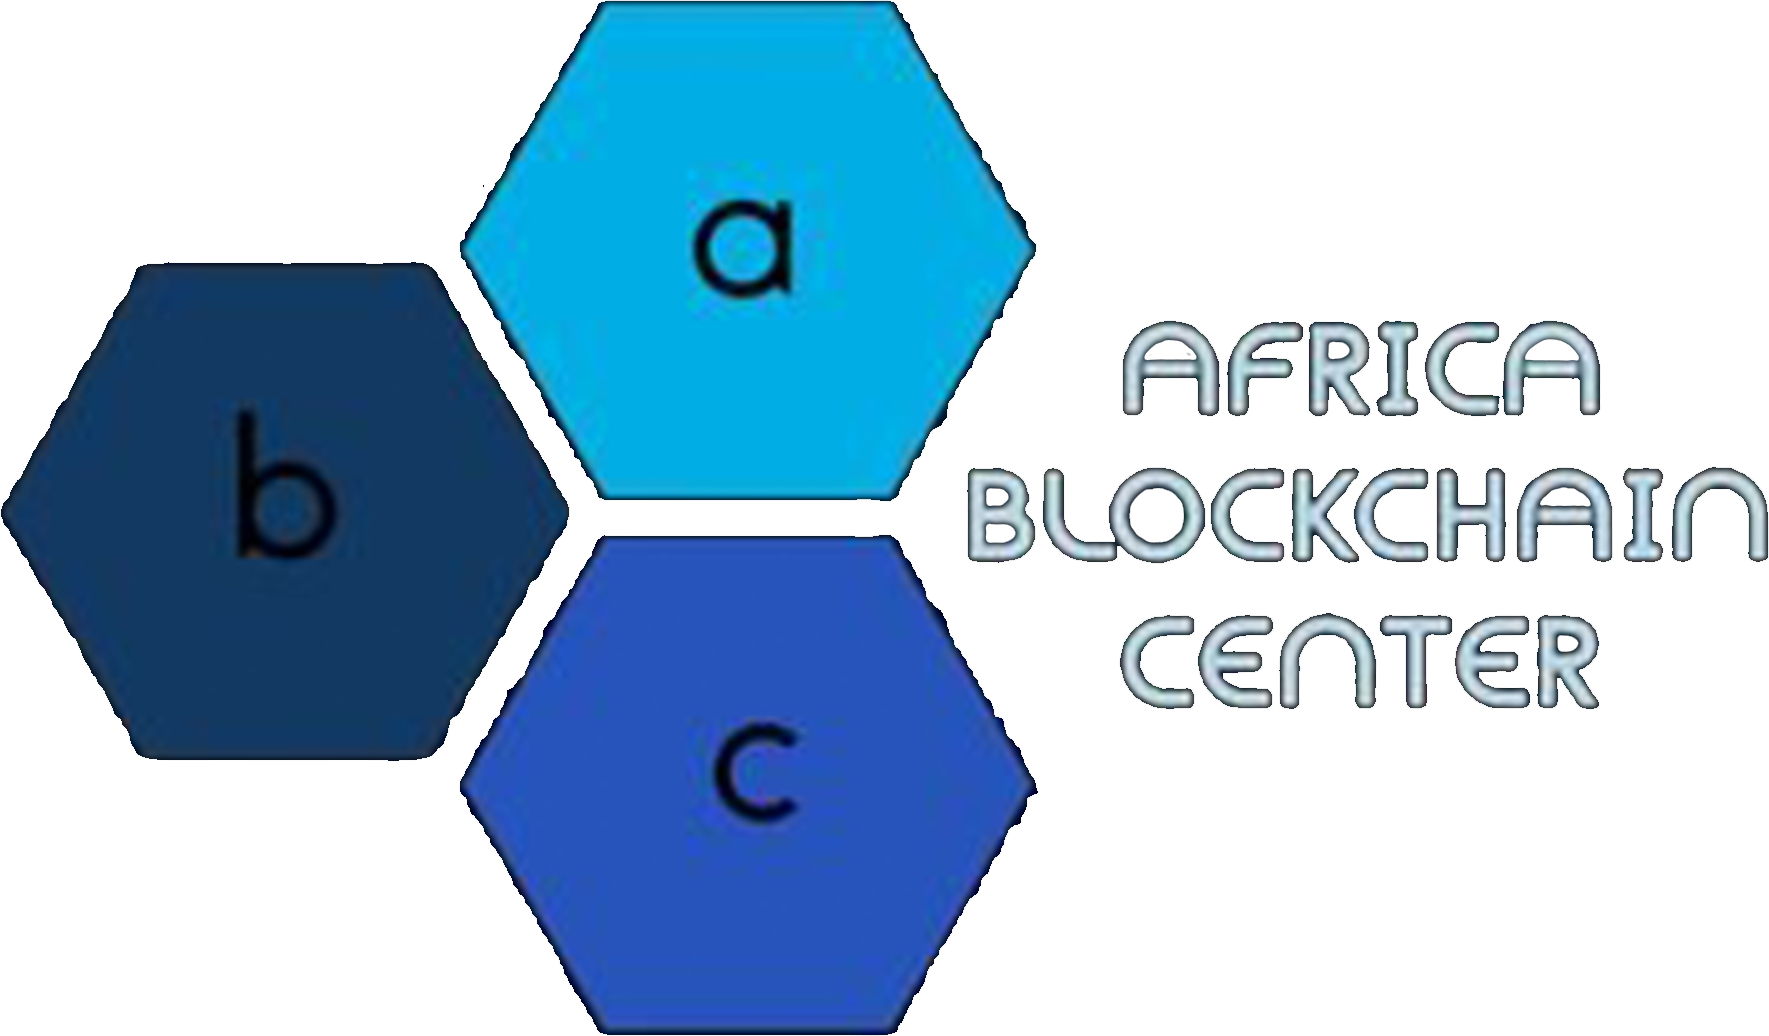 Africa Blockchain Center